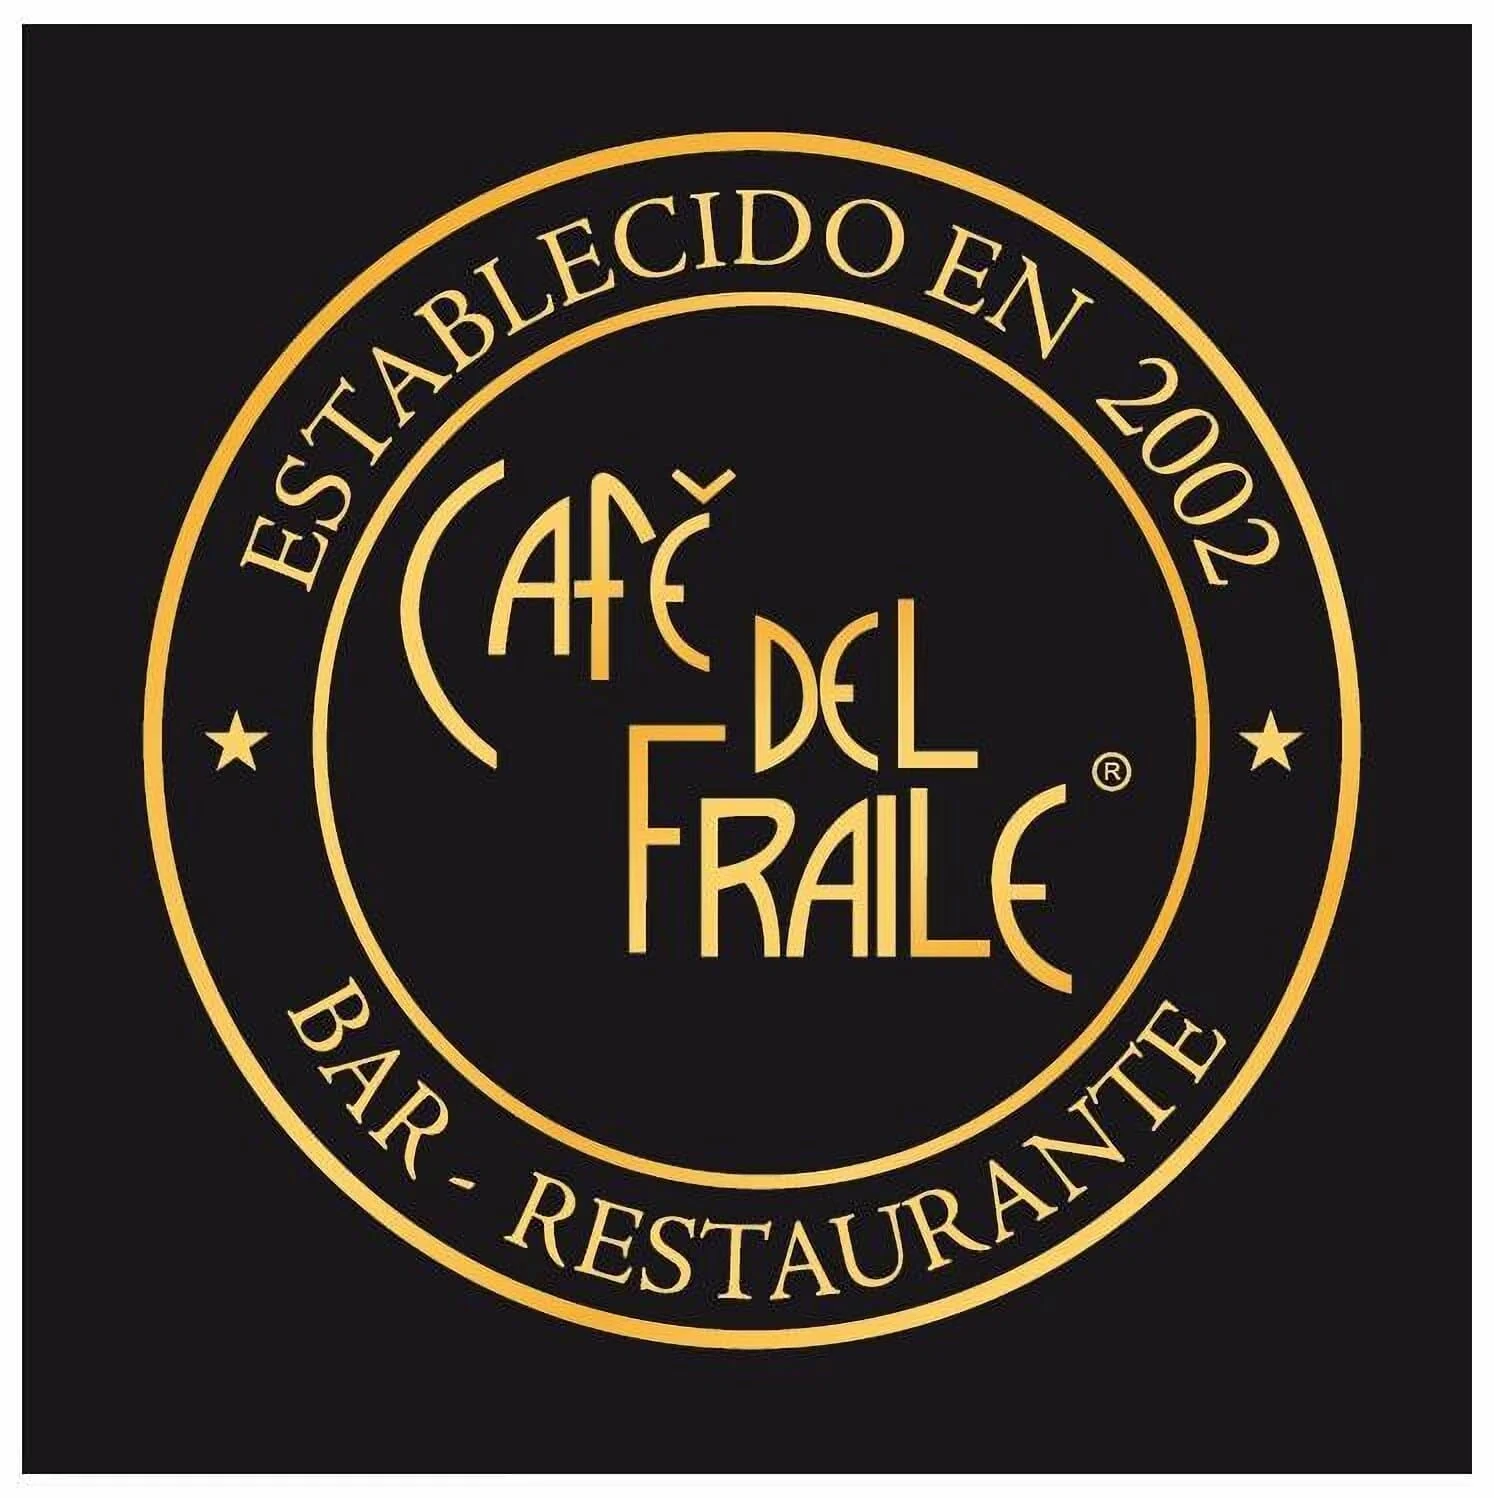 Restaurantes-cafe-del-fraile-17772